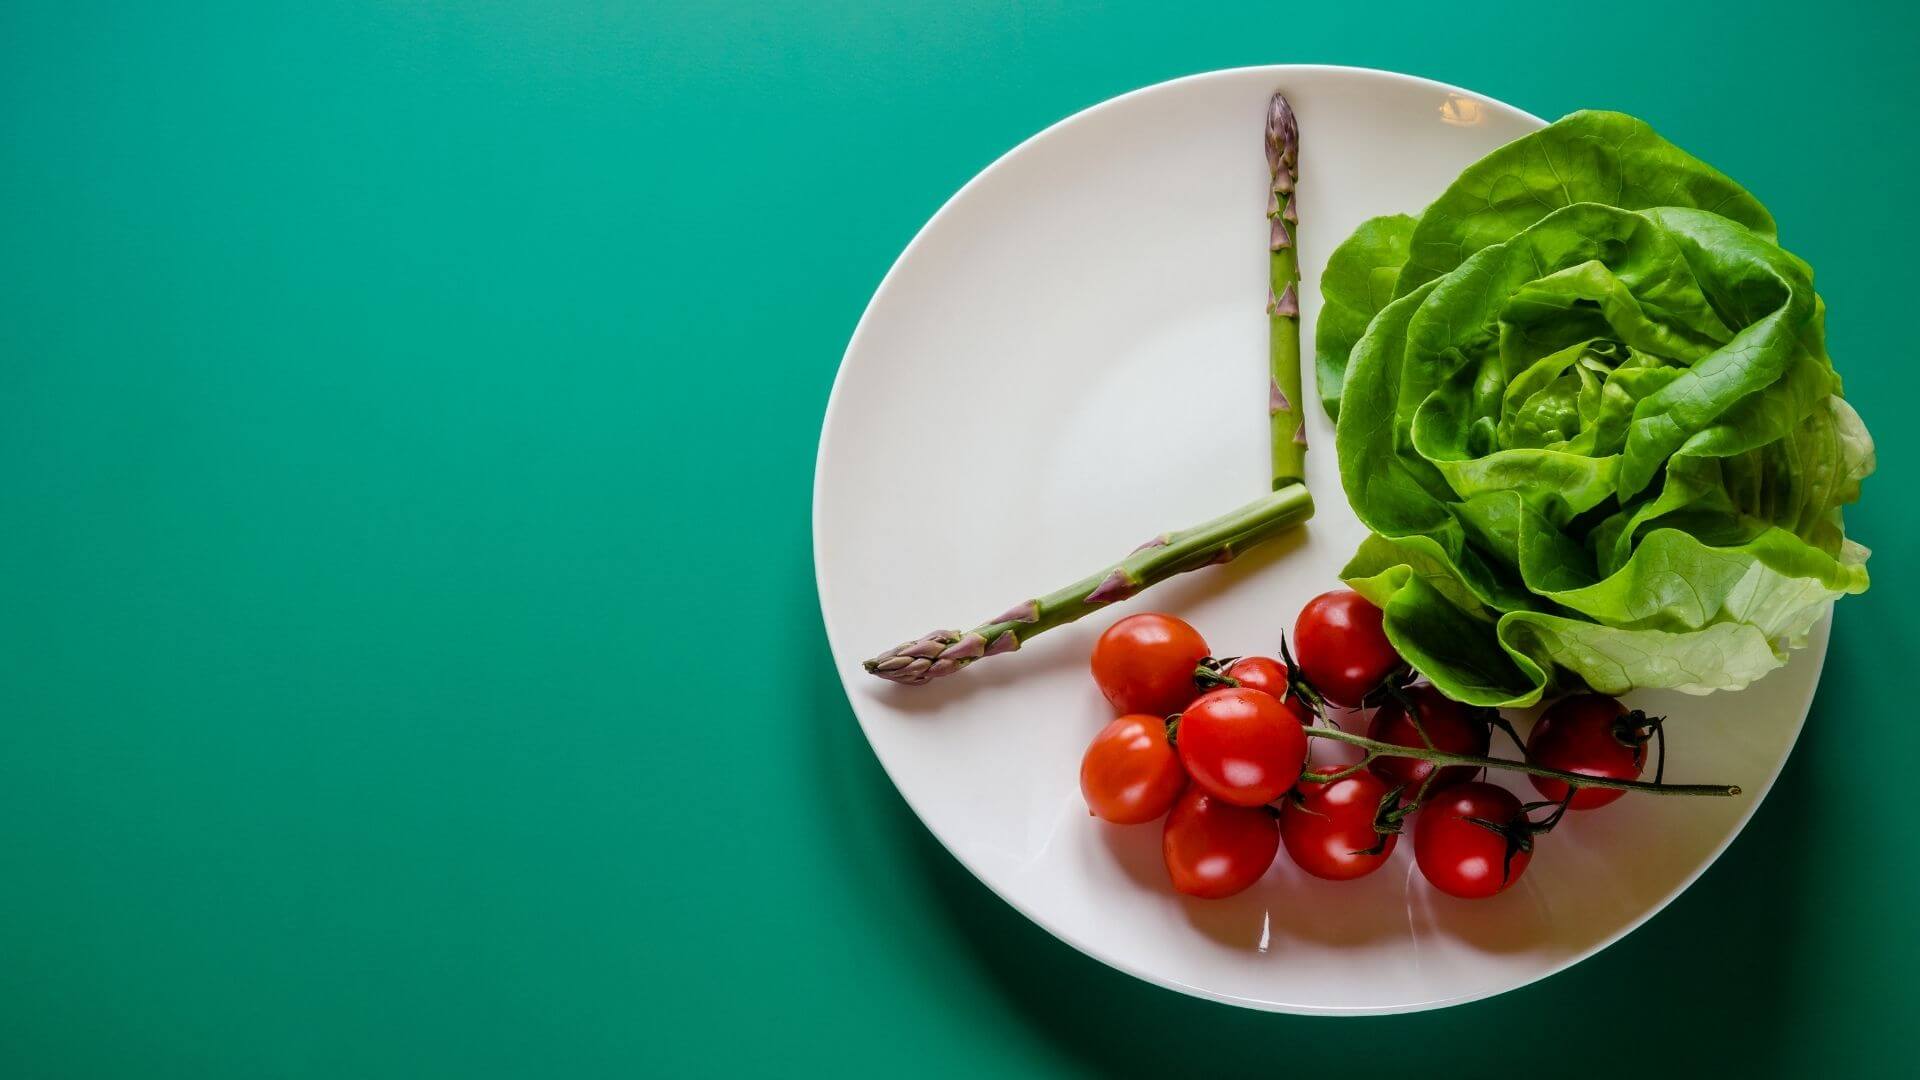 Teller mit Spargeln, Tomaten und Salat hat Aussehen einer Uhr